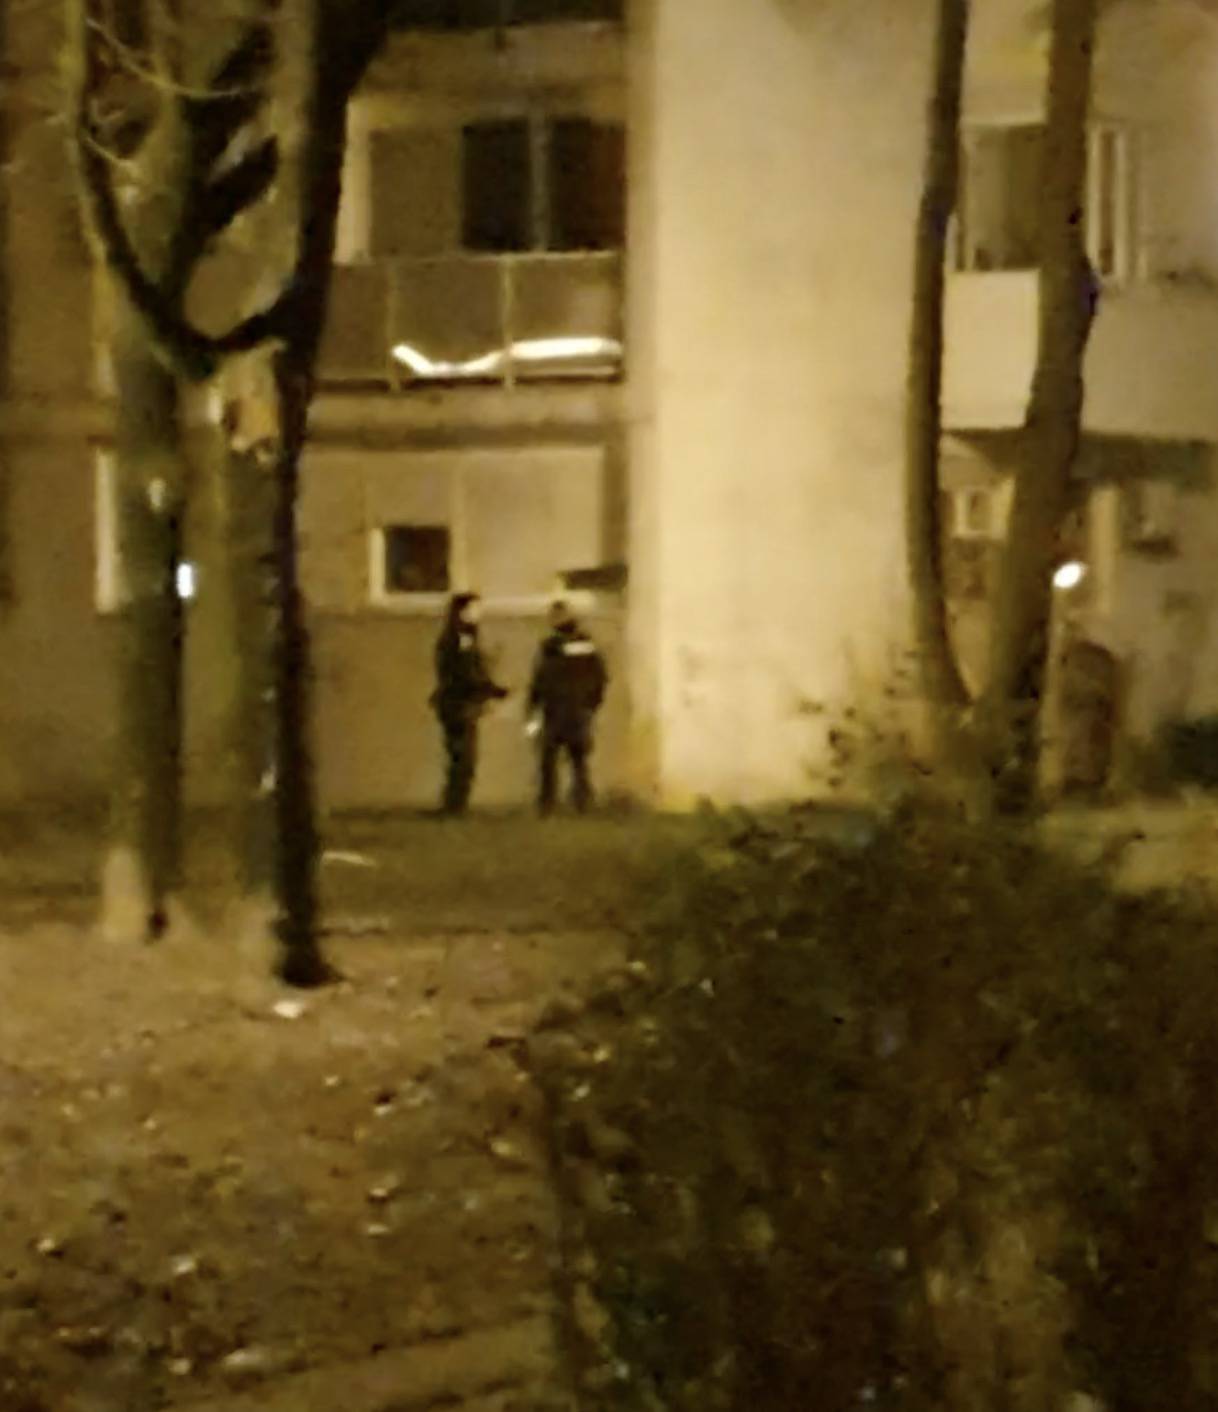 Muškarca su odveli u stan, oko zgrade je opet policijska traka